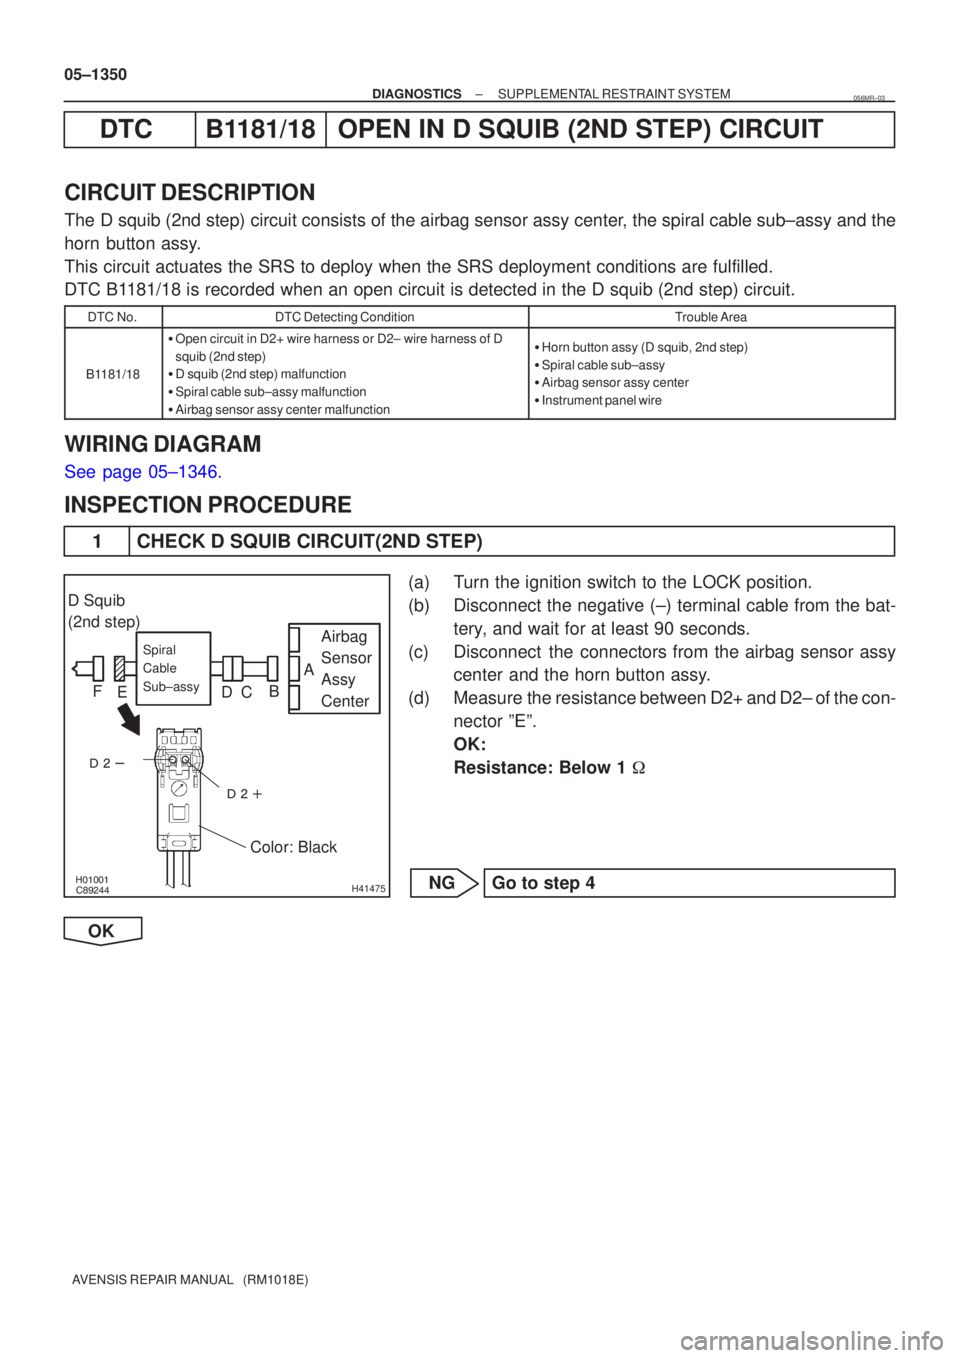 TOYOTA AVENSIS 2005  Service Repair Manual \b


H41475
D Squib
(2nd step)
Airbag
Sensor
Assy
Center
Spiral
Cable
Sub±assy
Color: Black
A
B
C
D
E
F
05±1350
±
DIAGNOSTICS SUPPLEMENTAL RESTRAINT SYSTEM
AVENSIS REPAIR MANUAL   